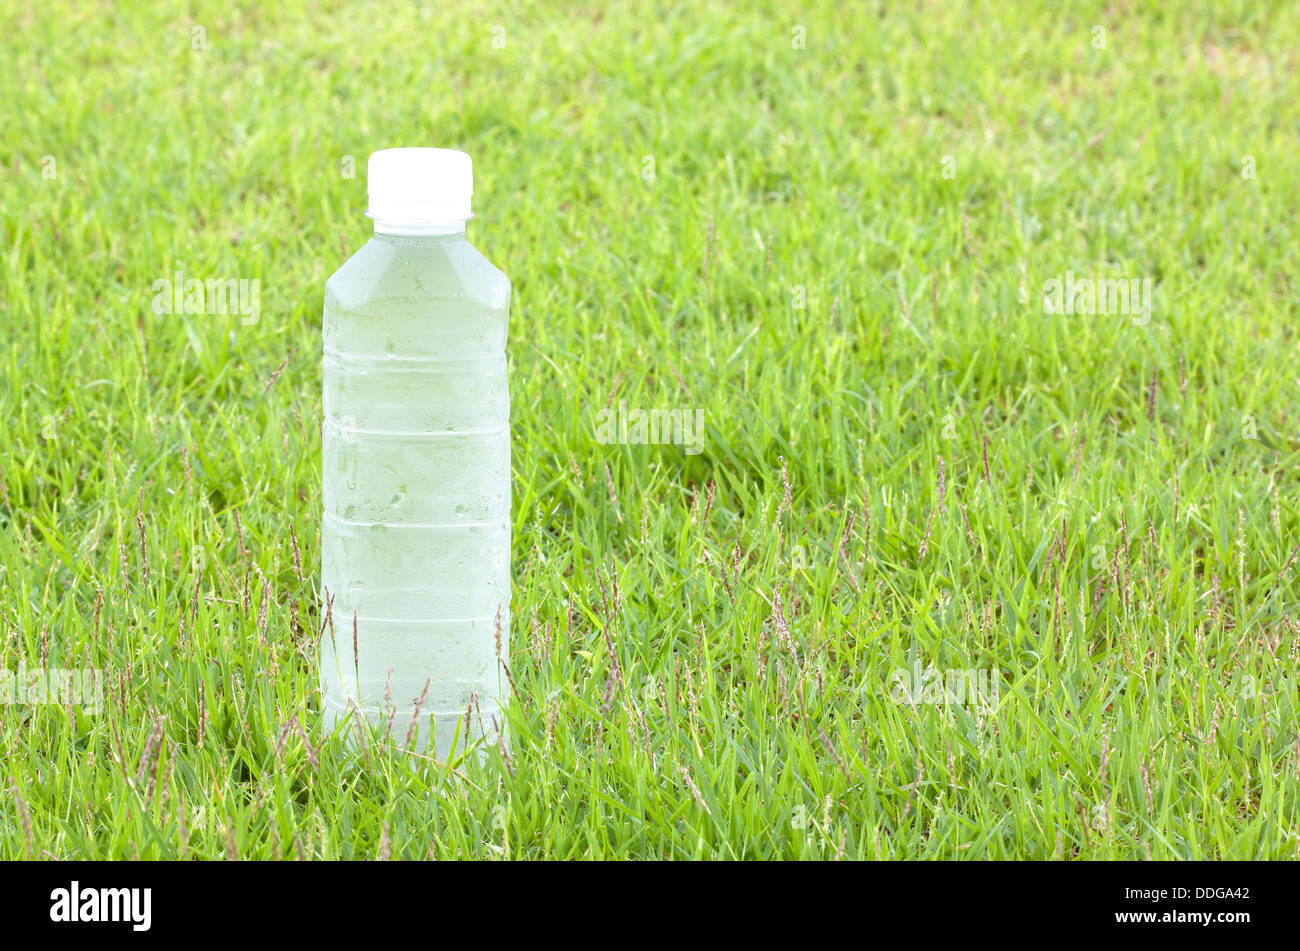 Plastikwasserflaschen kühl, durstlöschend. Hintergrund des Grases Stockfoto